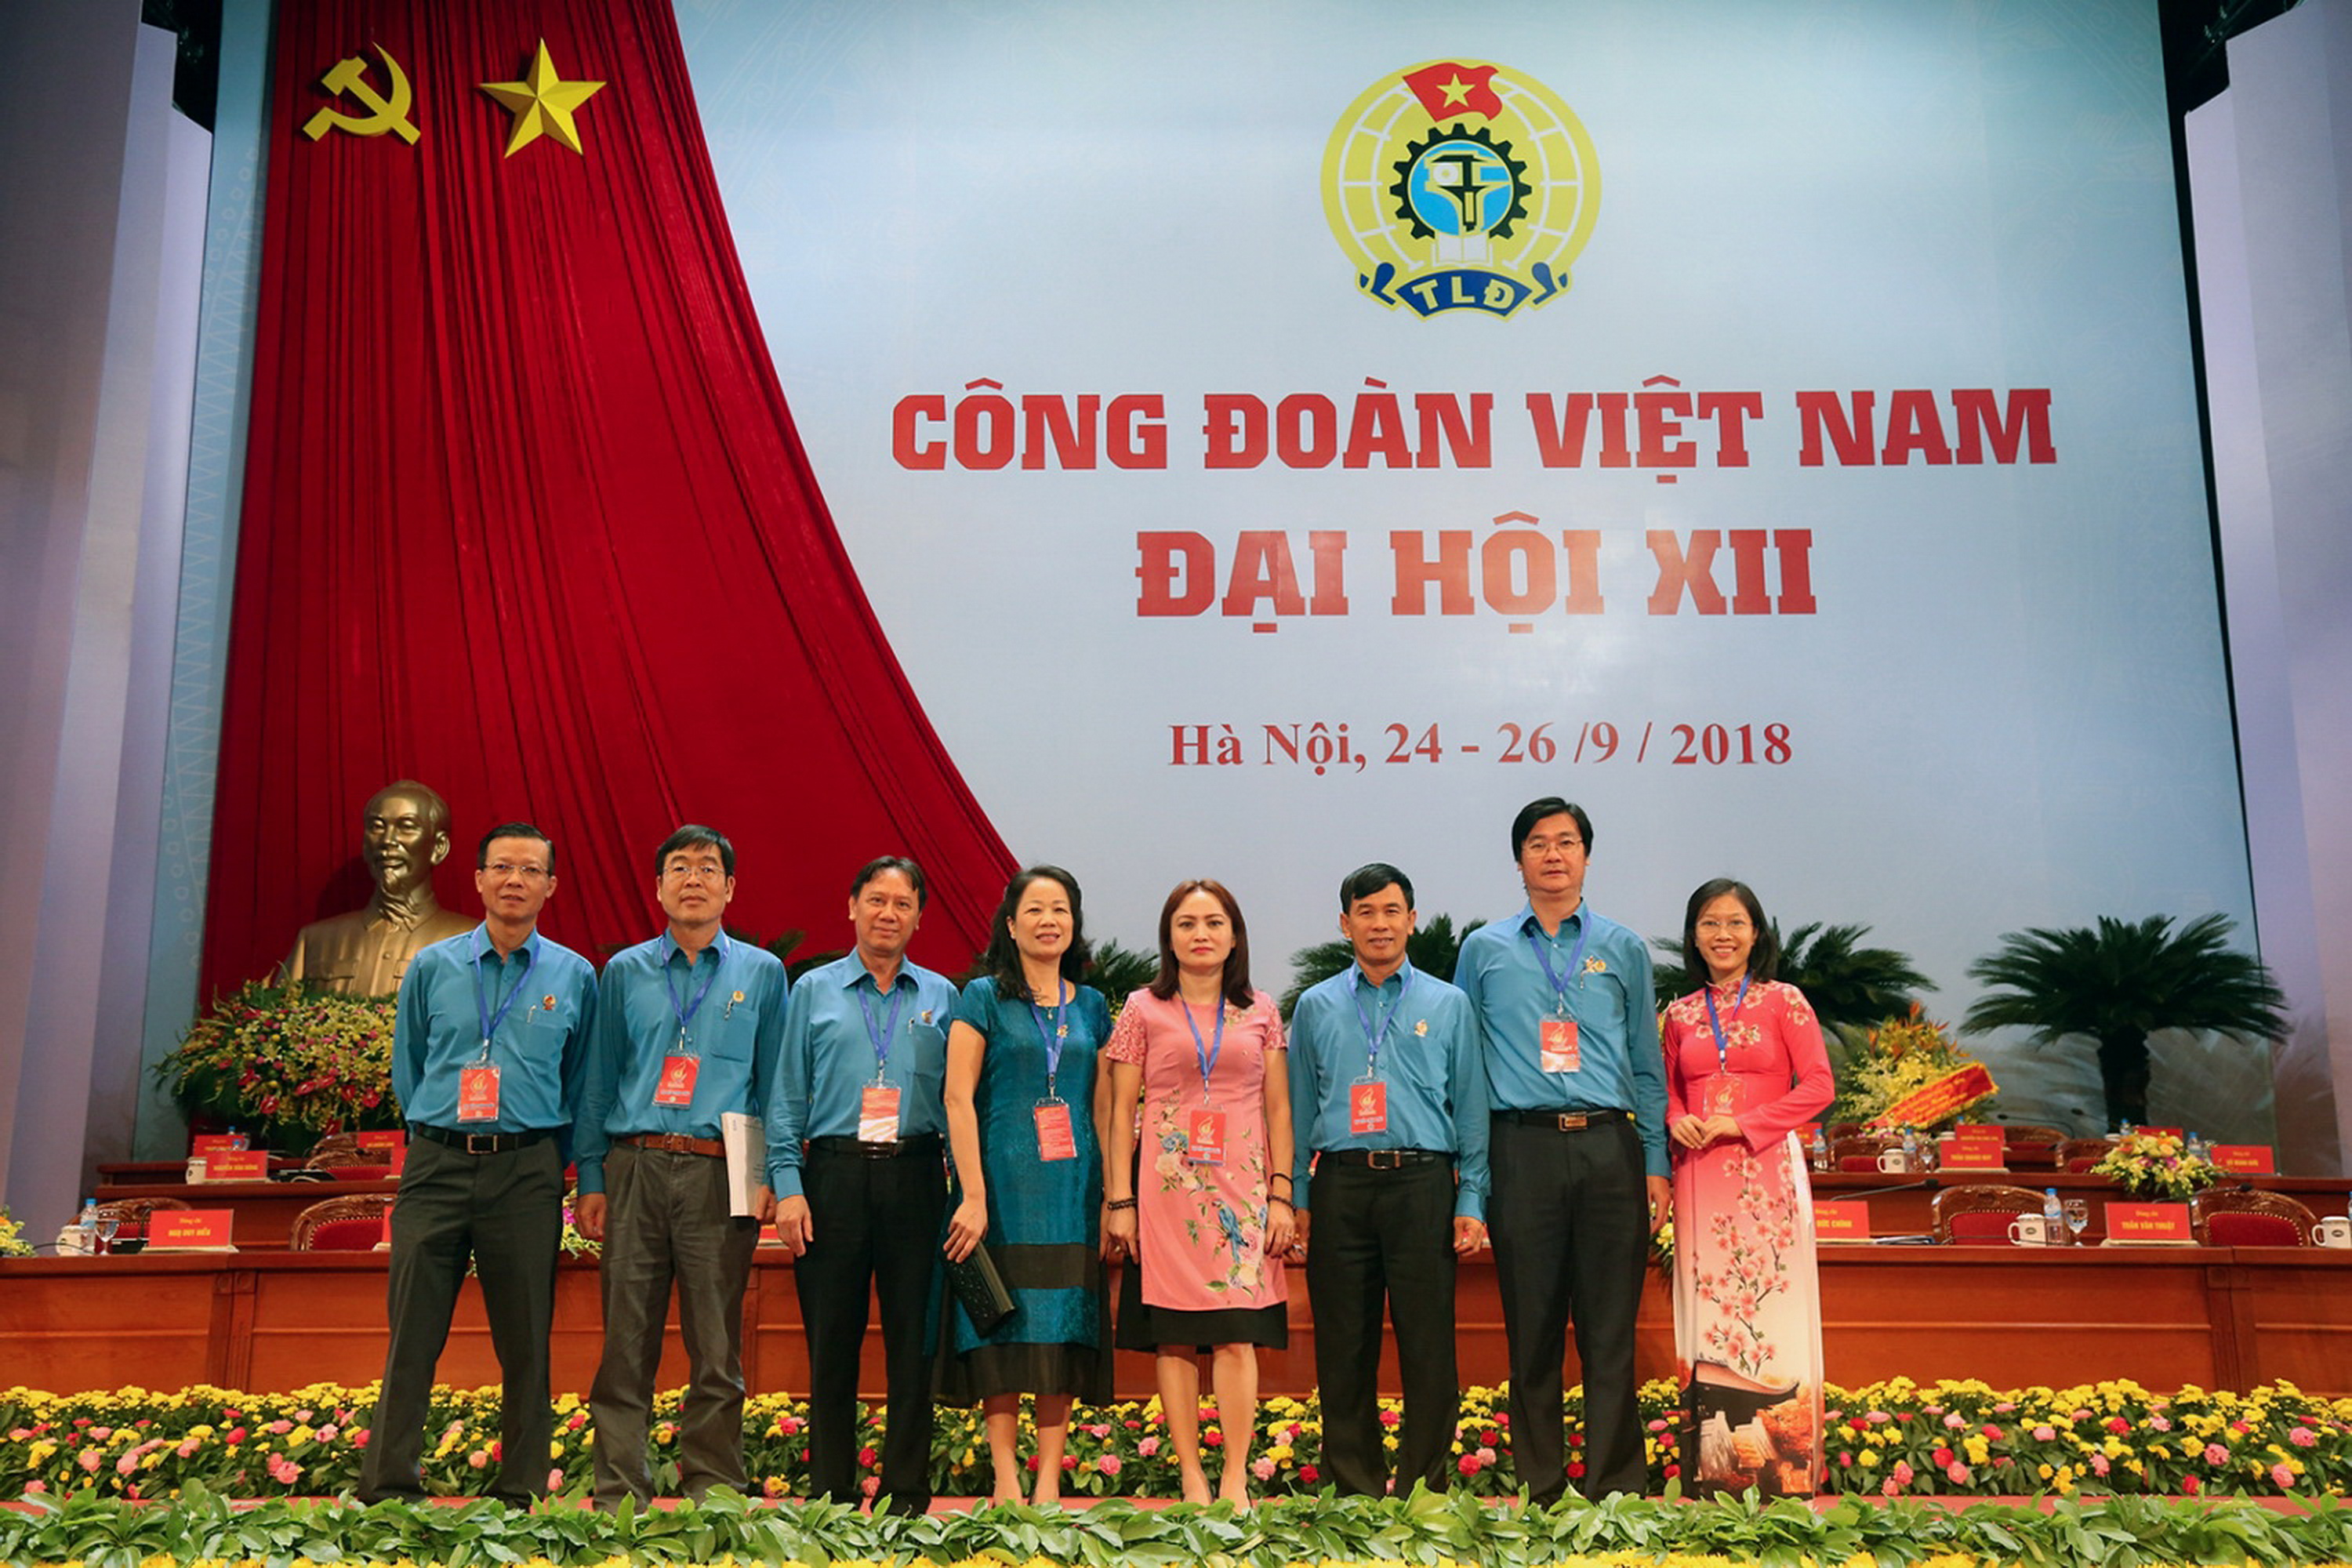 Các kỳ đại hội của Công đoàn Việt Nam